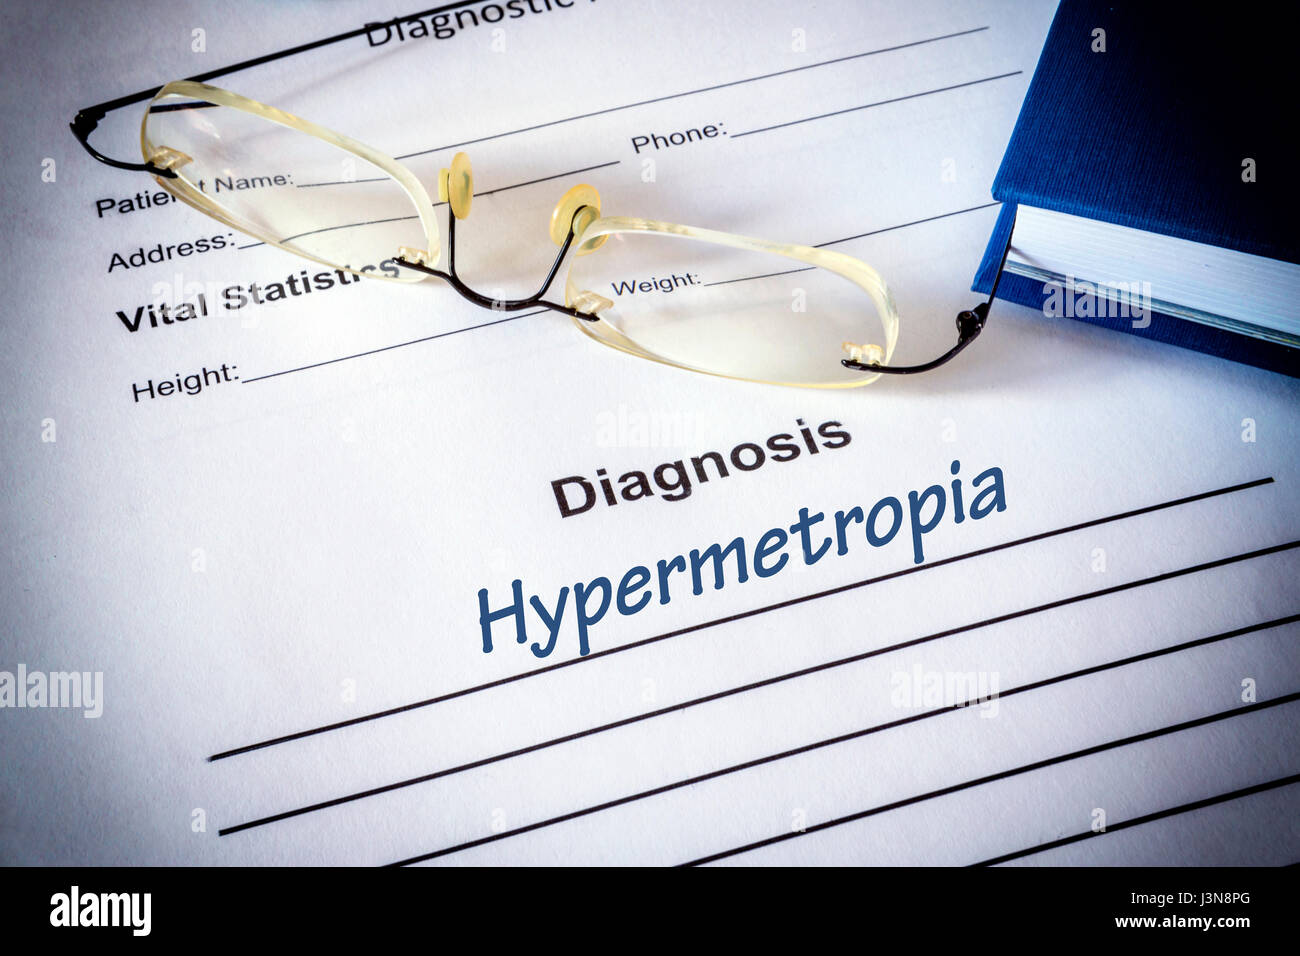 Diagnosis list with hypermetropia. Eye disorder concept. Stock Photo